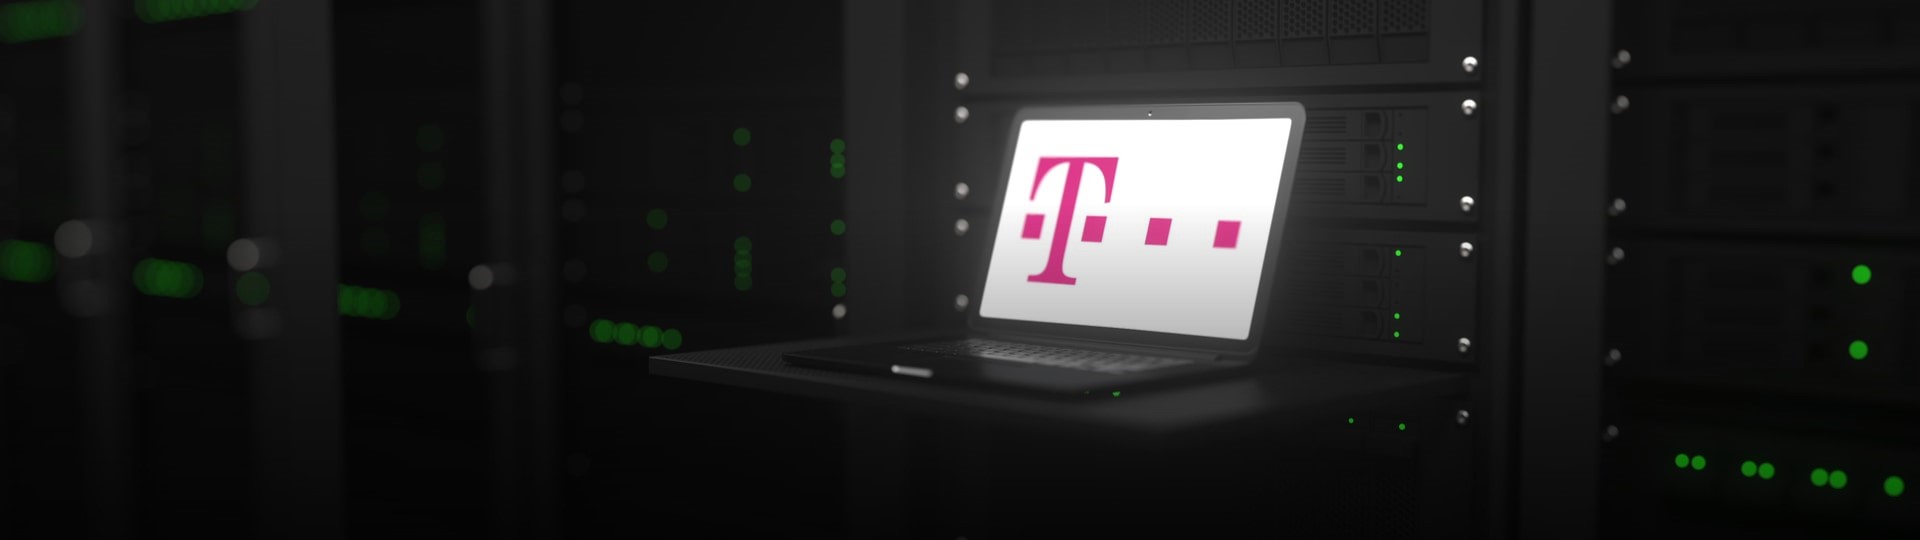 Tržby skupiny Deutsche Telekom loni překonaly 100 miliard eur